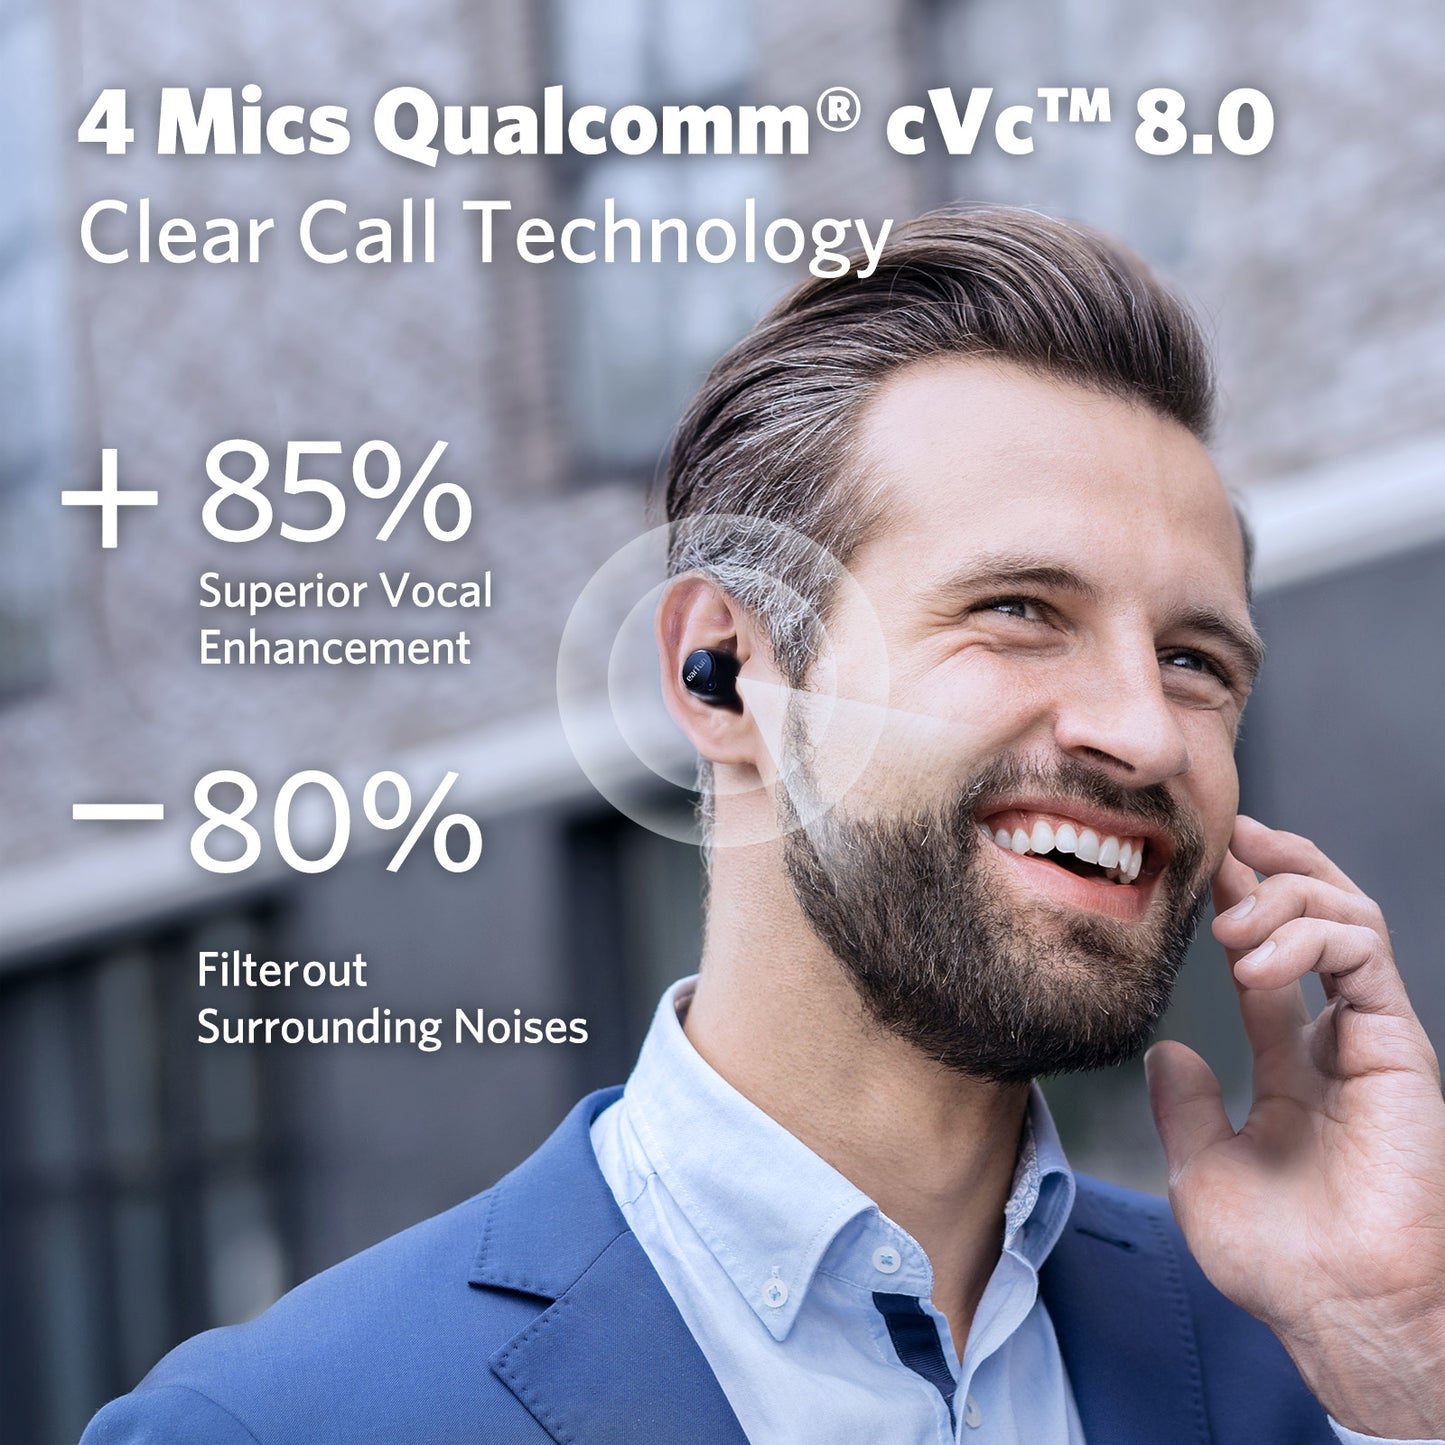 EarFun Free 2S - Draadloos- Bluetooth 5.2 oordopjes - In-Ear - Qualcomm aptX - IPX7 - zwart